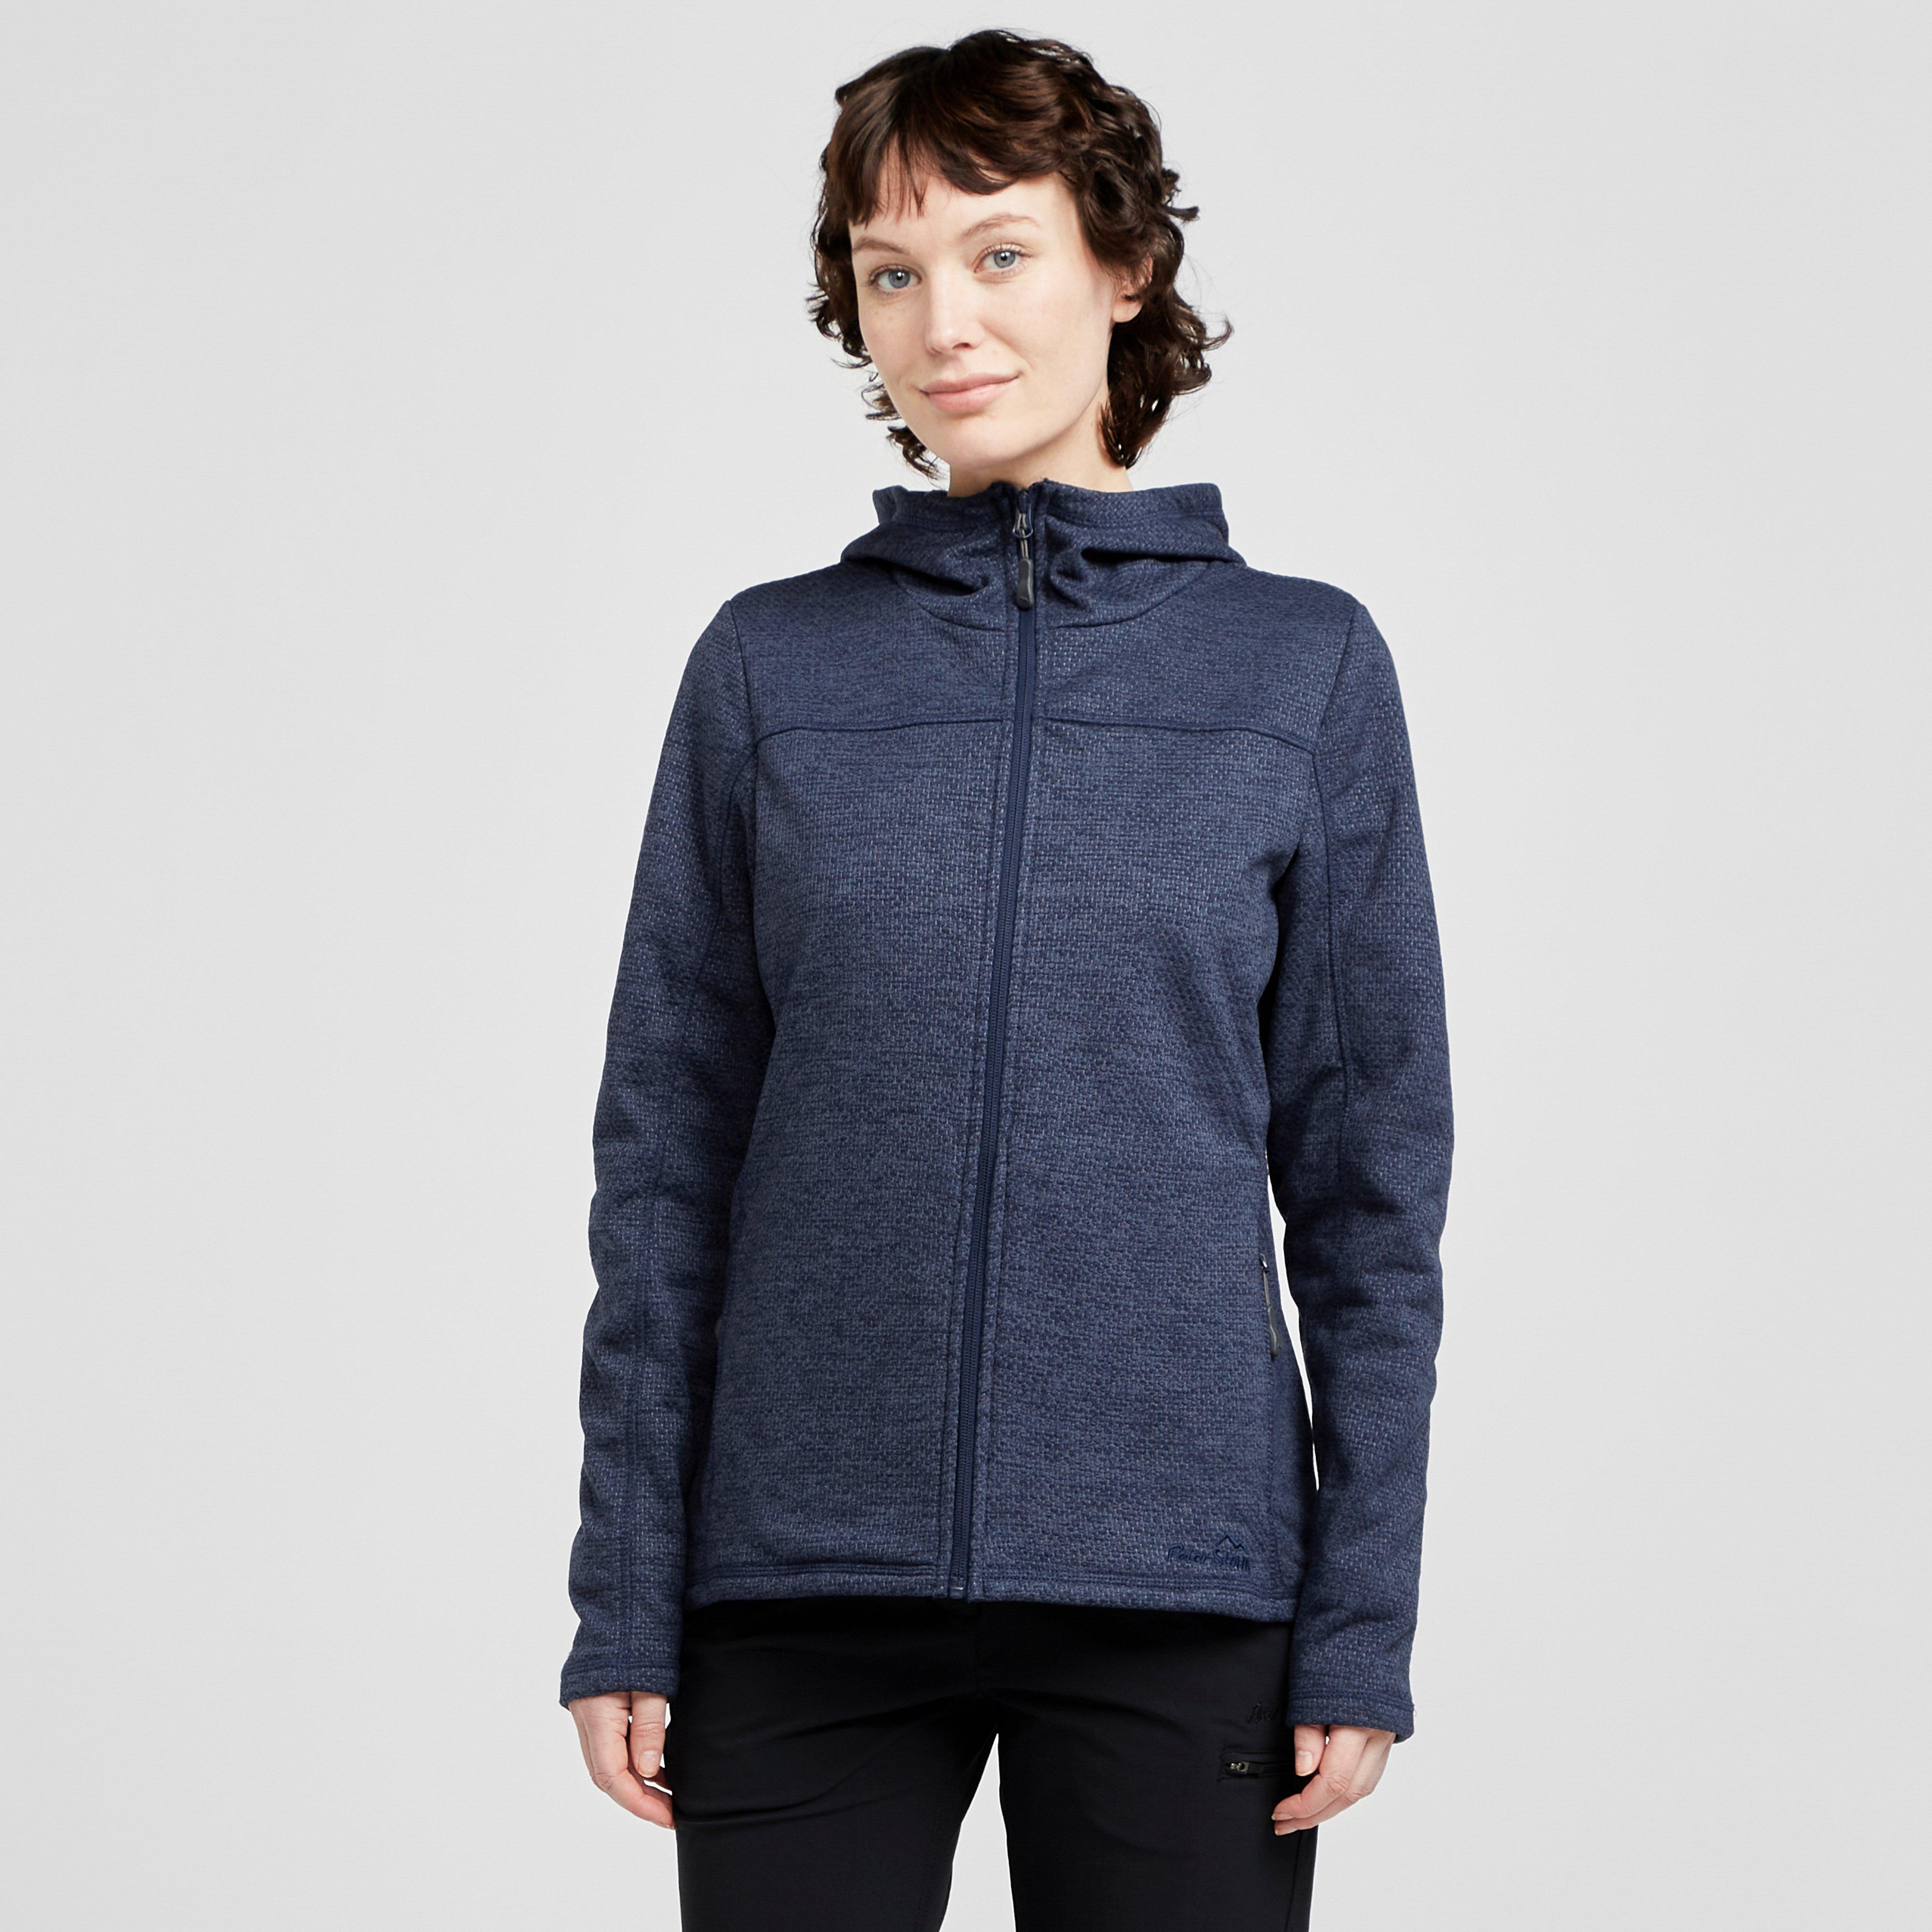 Peter Storm Womens Source Full-zip Fleece - Navy Blue/navy Blue  Navy Blue/navy Blue